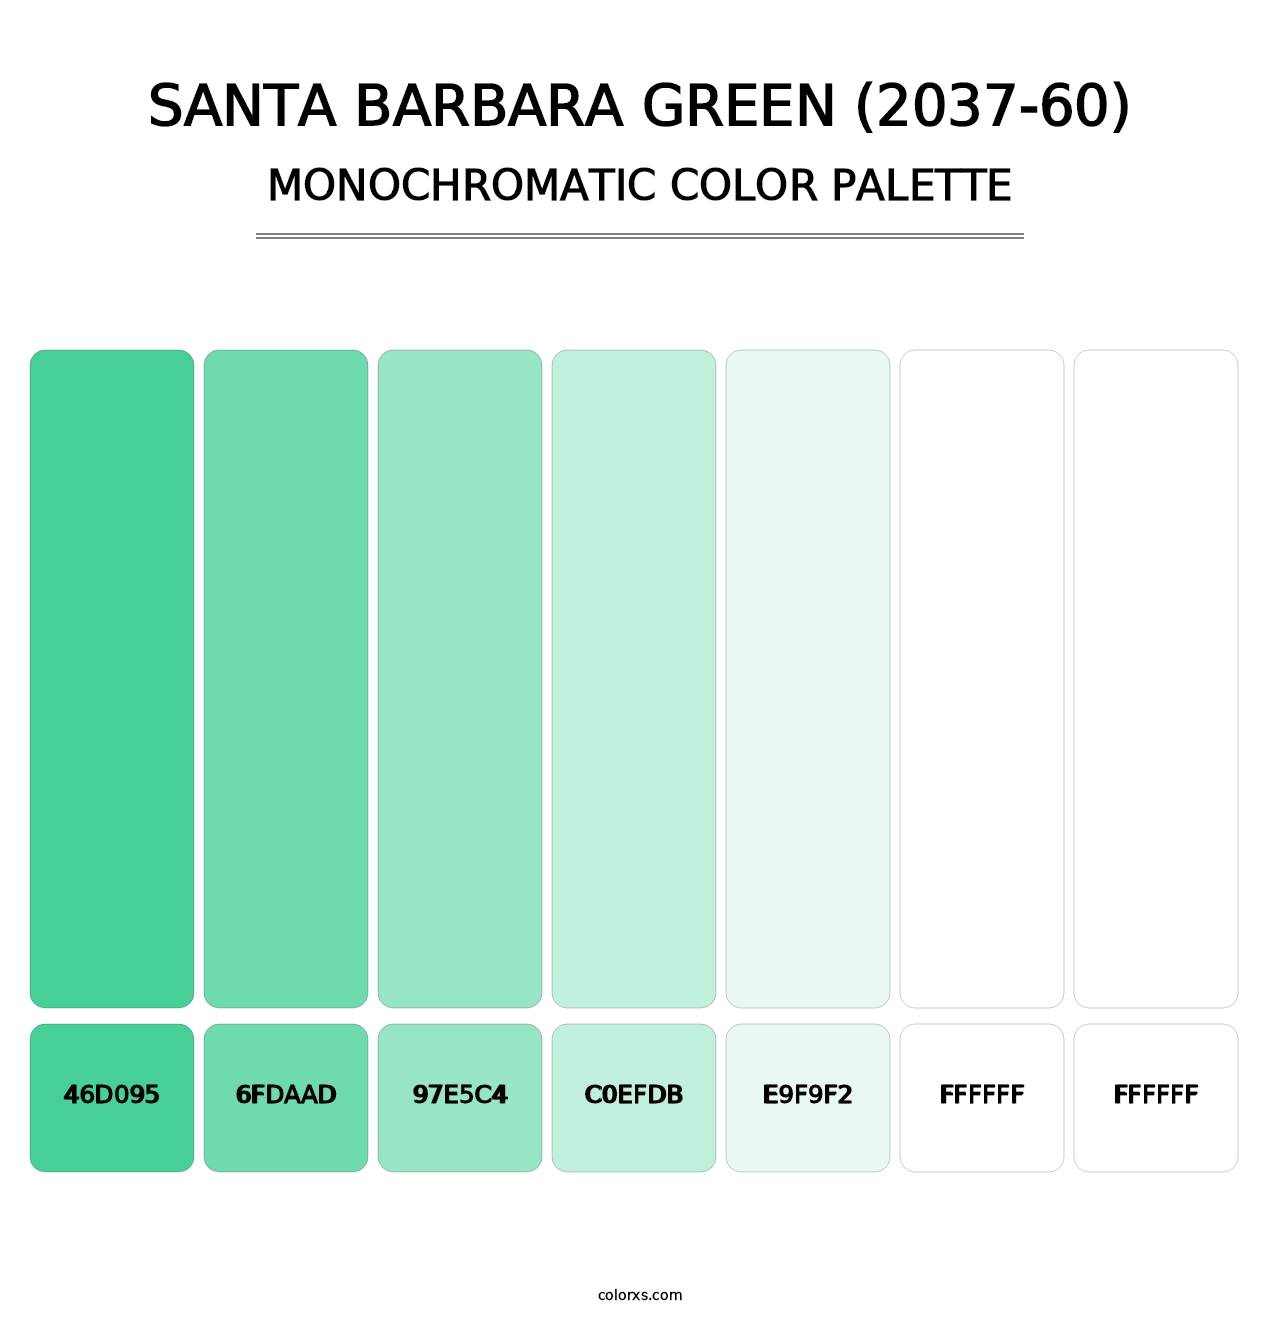 Santa Barbara Green (2037-60) - Monochromatic Color Palette